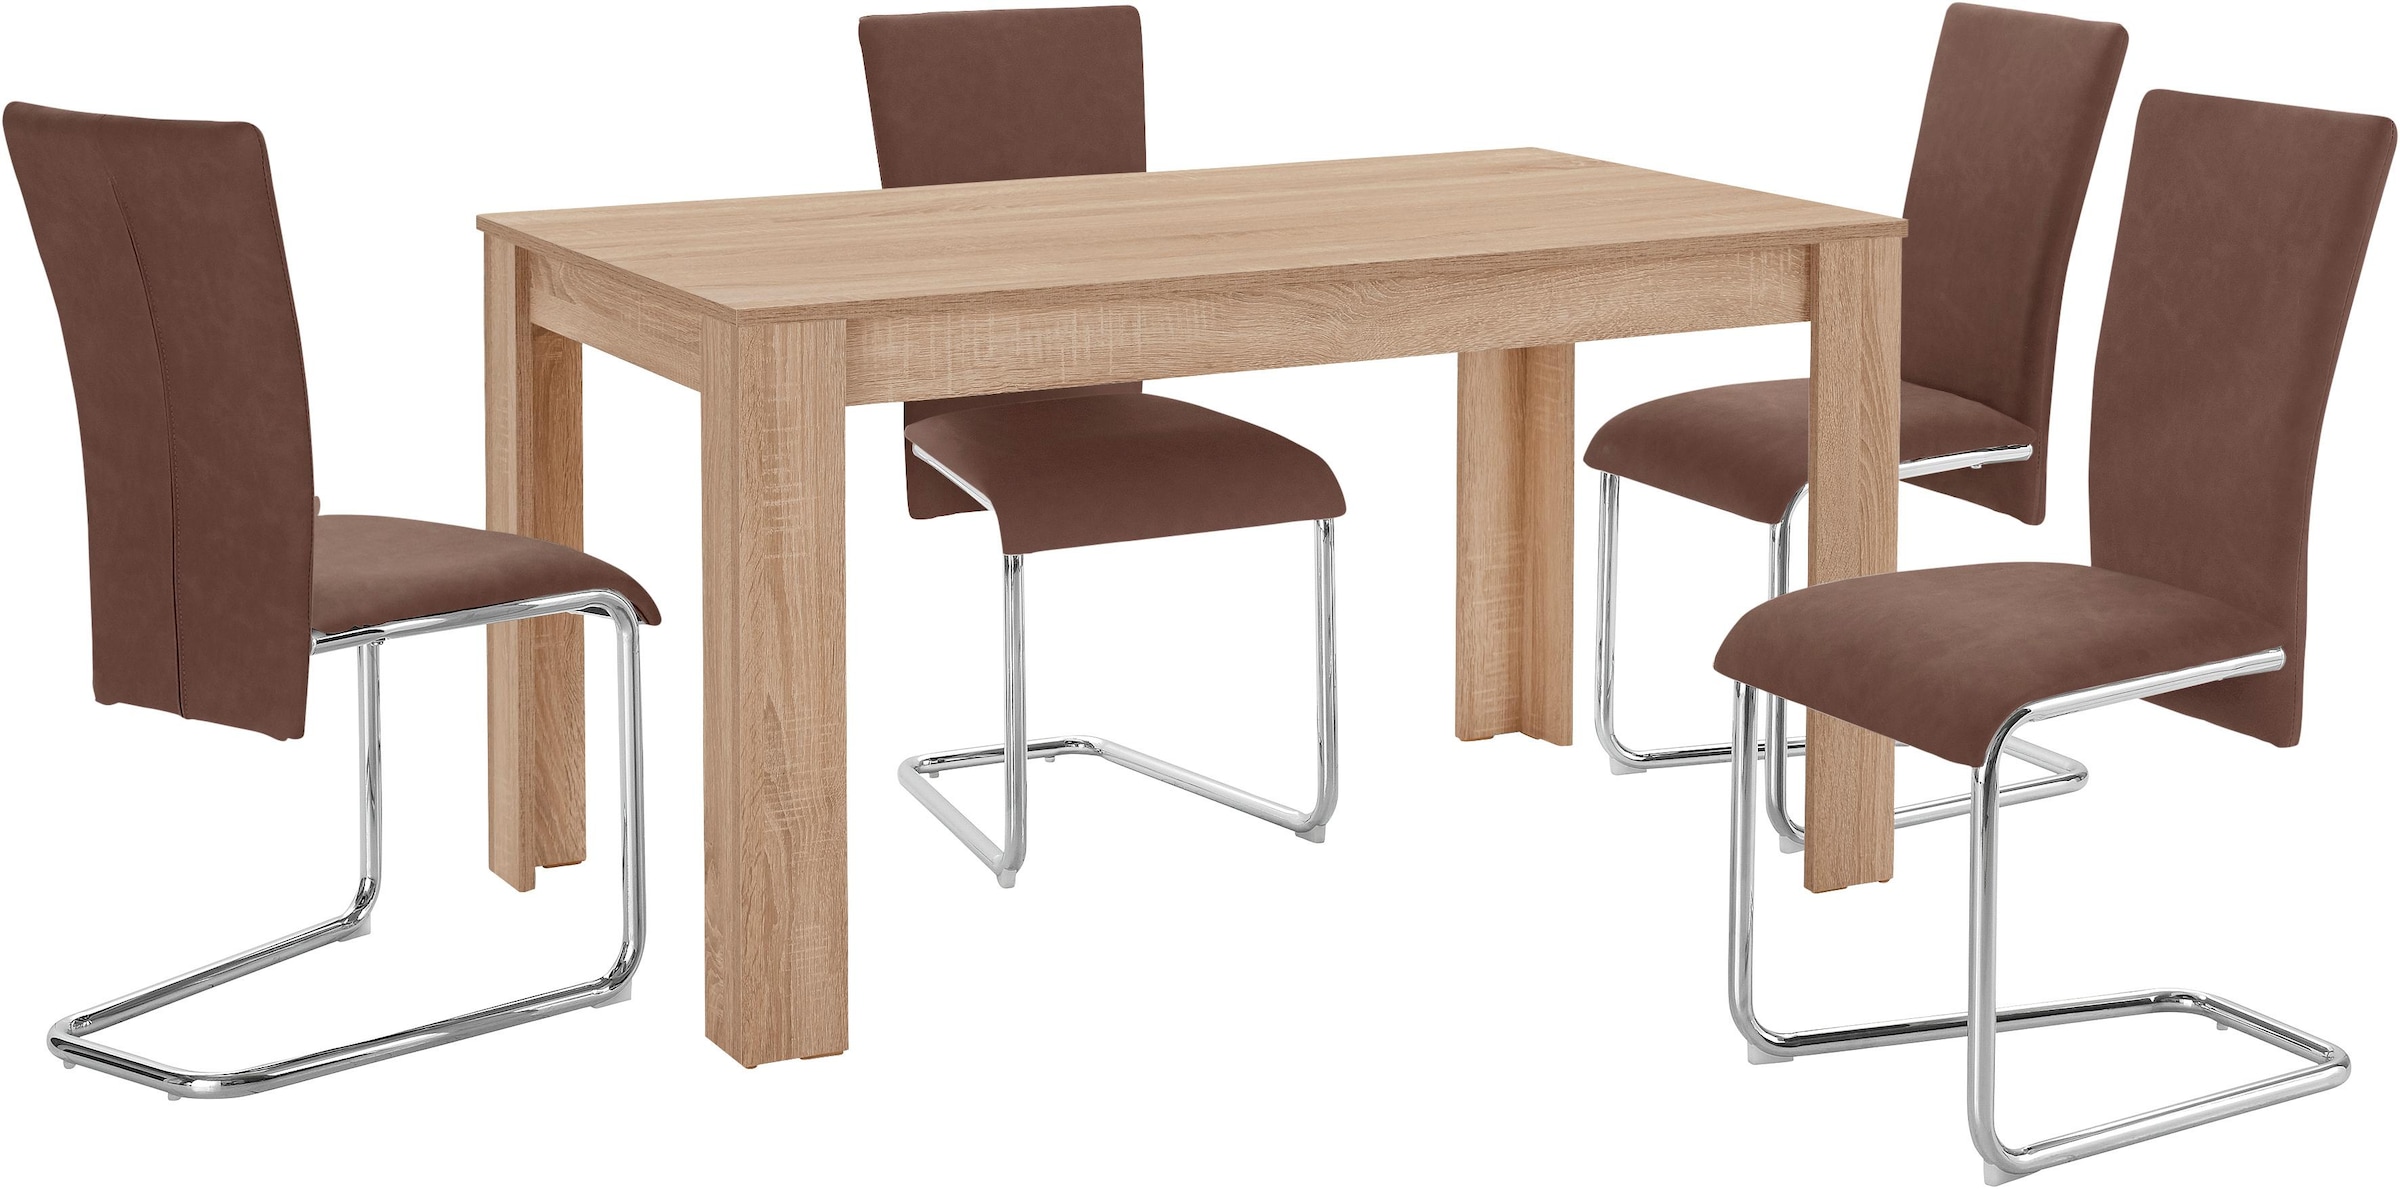 Homexperts Essgruppe »Nick3-Mulan«, (Set, 5 tlg.), mit 4 Stühlen, Tisch in eichefarben sägerau, Breite 140 cm